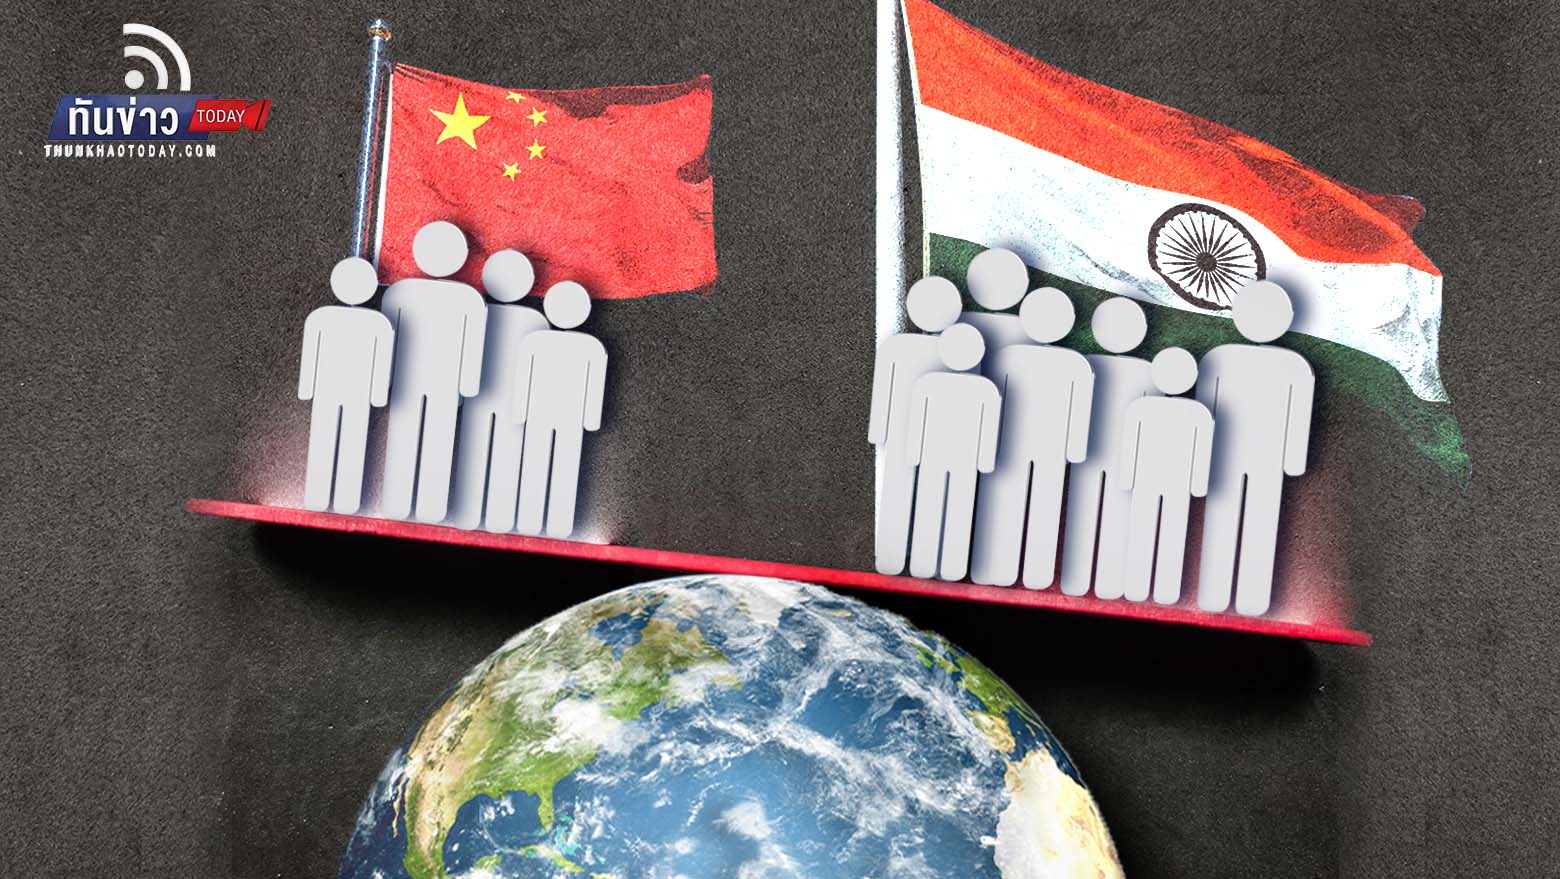 “นักวิเคราะห์คาด “อินเดีย” ขึ้นแท่นประชากรมากที่สุดในโลกแซง “จีน” ไปแล้ว ใขขณะที่จีนประชากรลดลงในรอบหลายสิบปี